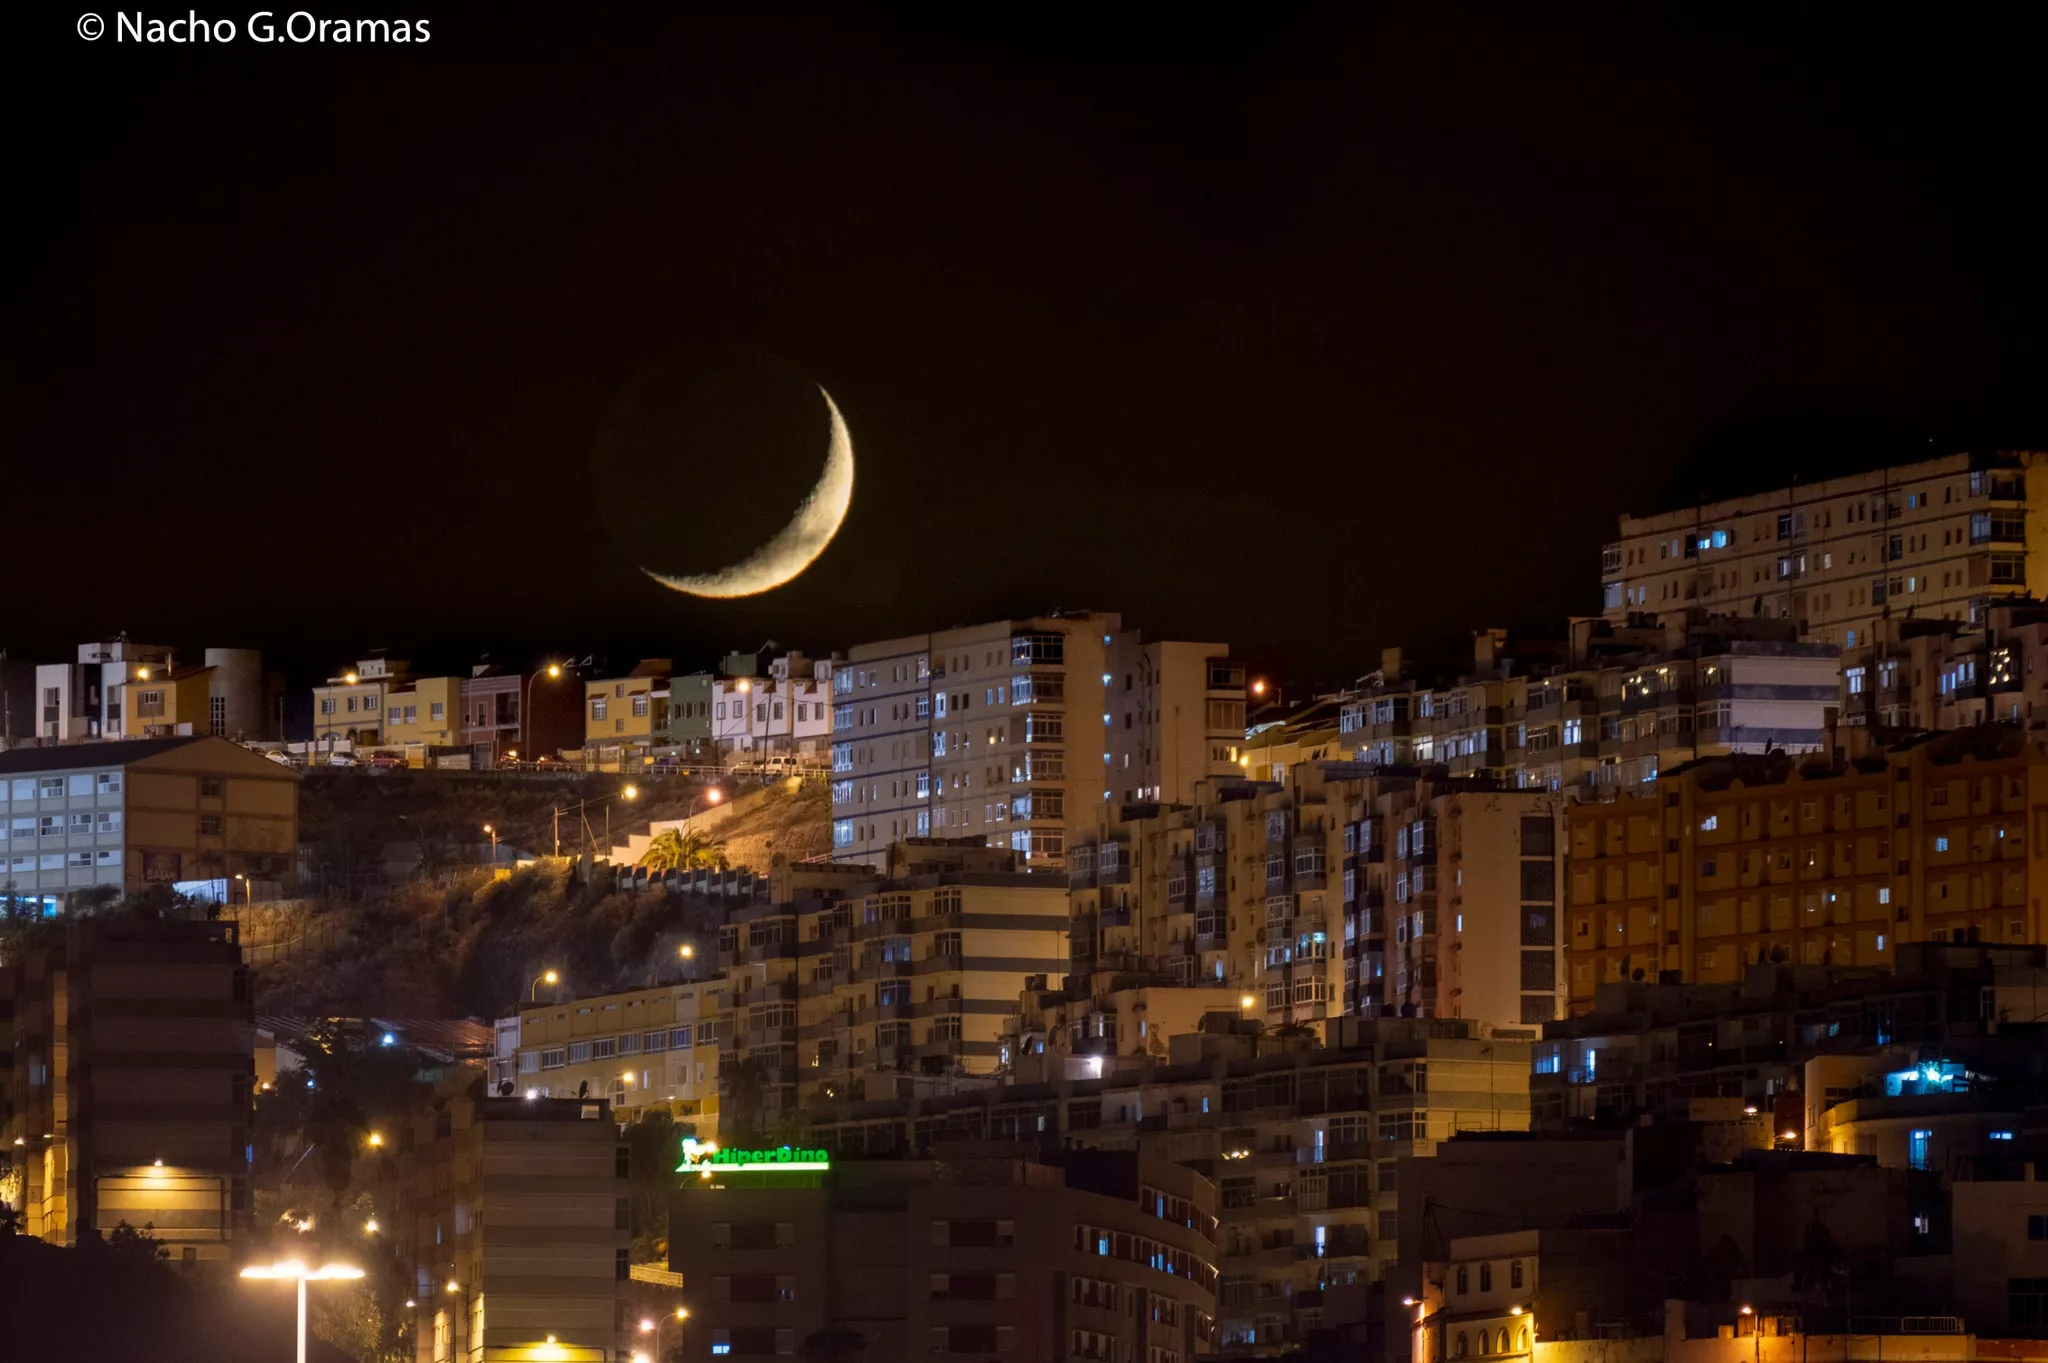 La Luna sobre la ciudad de Las Palmas de Gran Canaria./ NACHO GONZÁLEZ ORAMAS